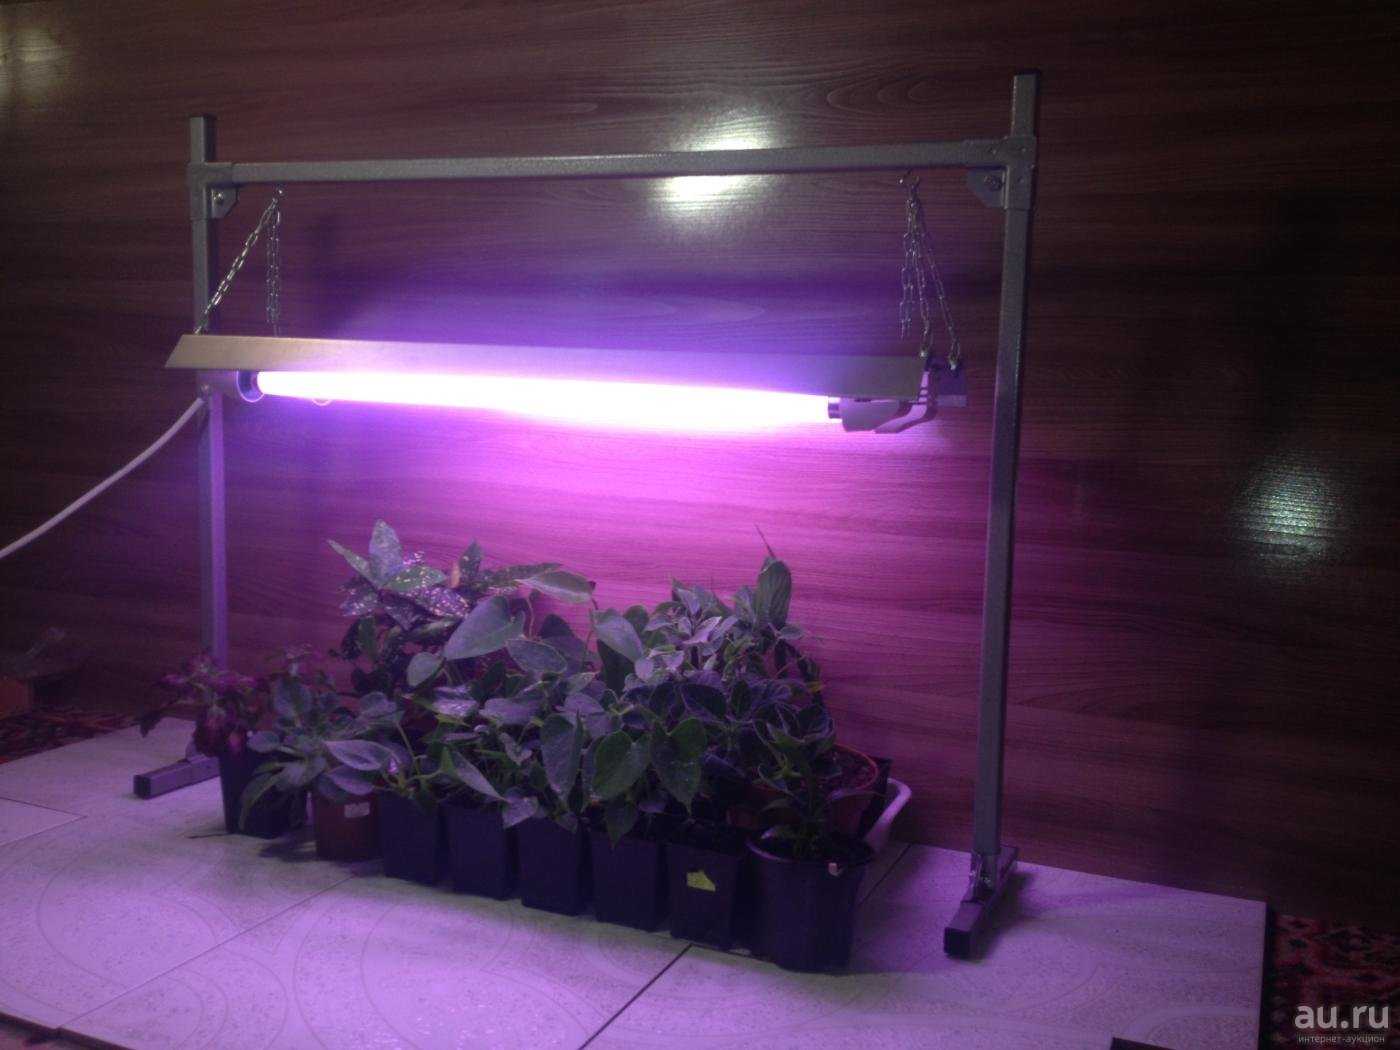 Лучшая подсветка для цветов. Лампа General 6500k 40 Вт для досвечивания рассады. Люминесцентные лампы 36/840 спектра для рассады. Лампа дневного света для растений. Т5 лампа для рассады.